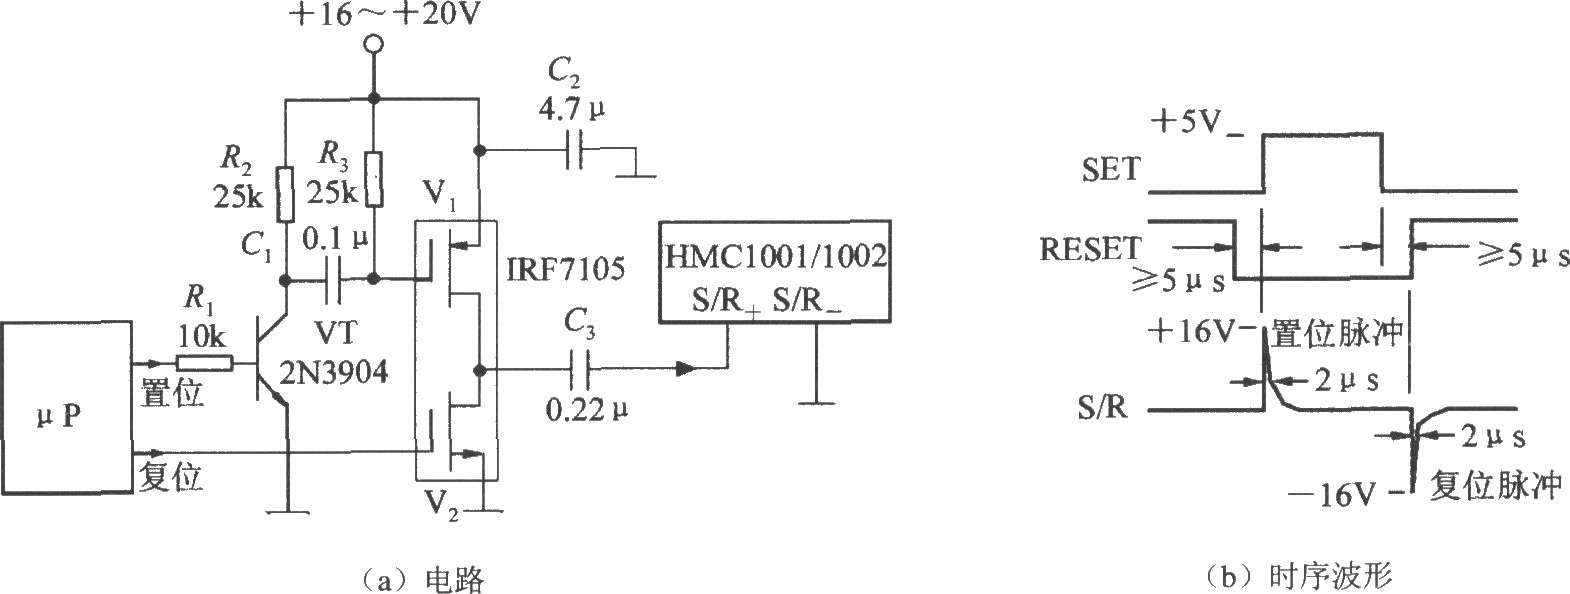 产生S／R(置位/复位)脉冲电路(集成磁场传感器HMC1001/1002)